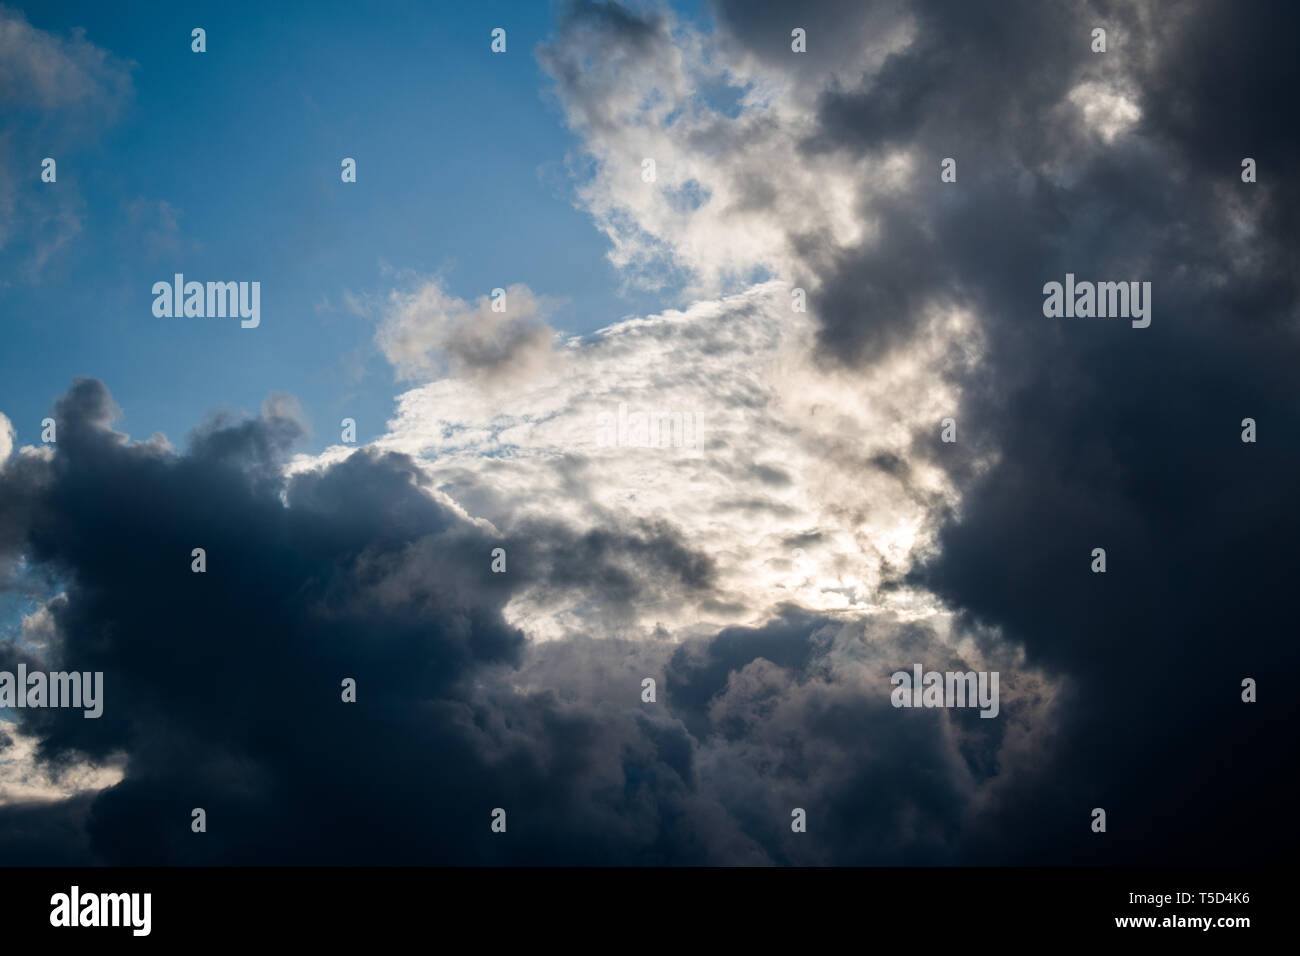 Dies ist eine Erfassung von einige Wolken im Libanon genommen, nachdem ein stürmisches Wetter und Sie können die schöne weiße und schwarze Schichten siehe Stockfoto